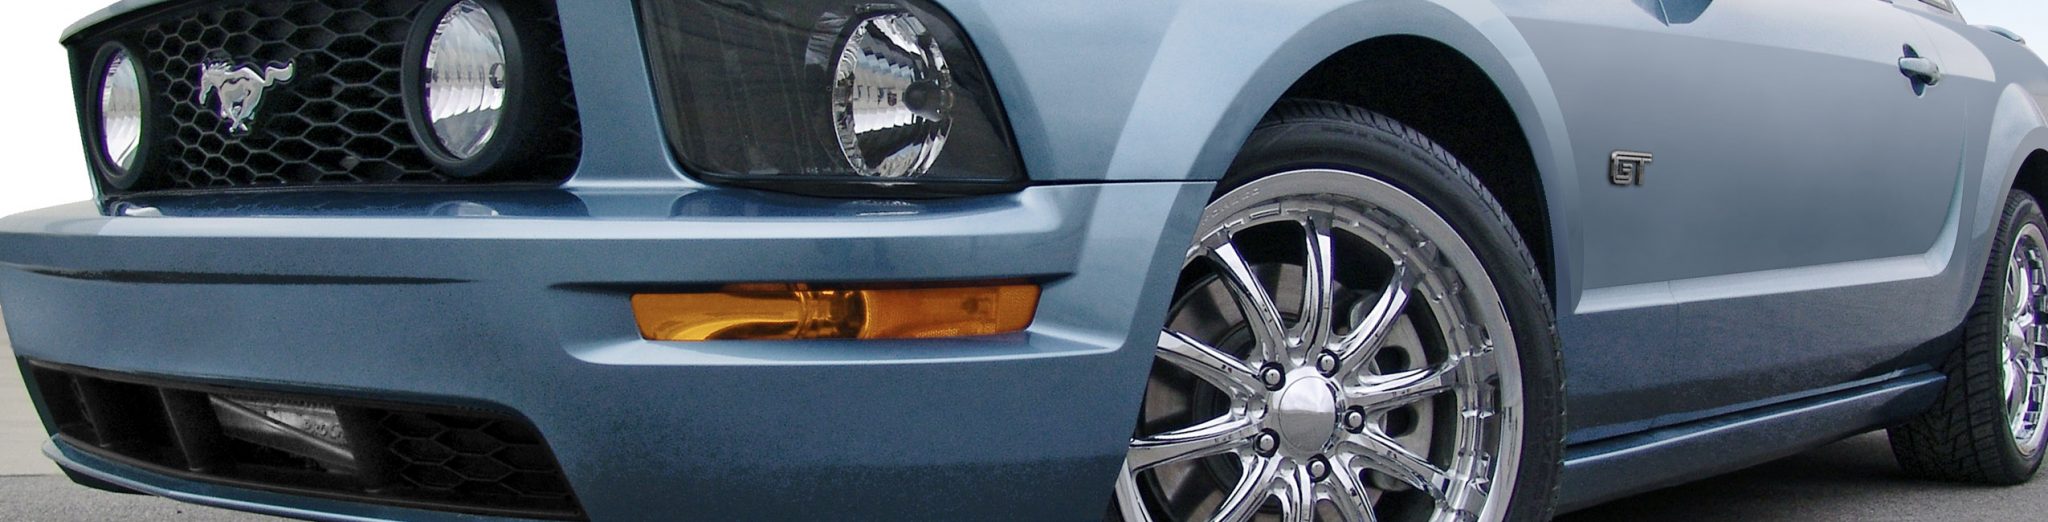 2005 - 10 Mustang GT (4.6 3V)